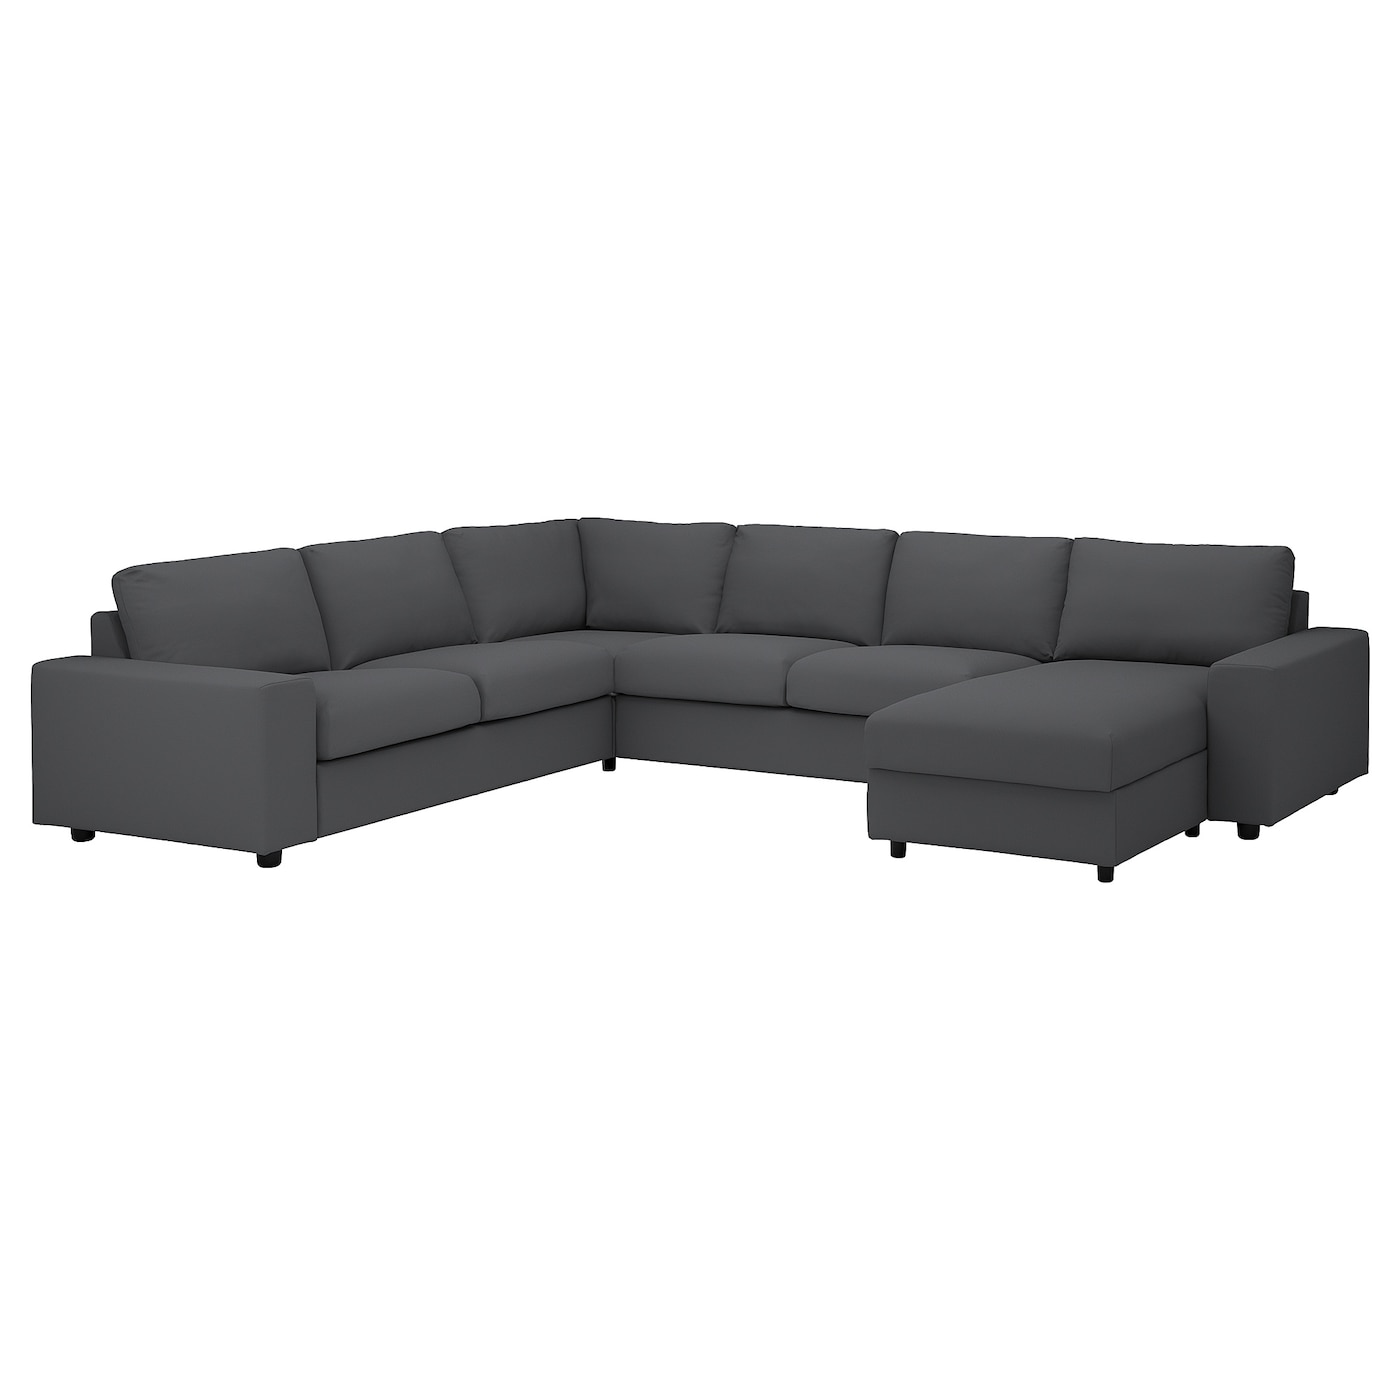 ВИМЛЕ Диван угловой, 5-местный. диван+диван, с широкими подлокотниками/Халларп серый VIMLE IKEA угловой диван fortune шоколадный